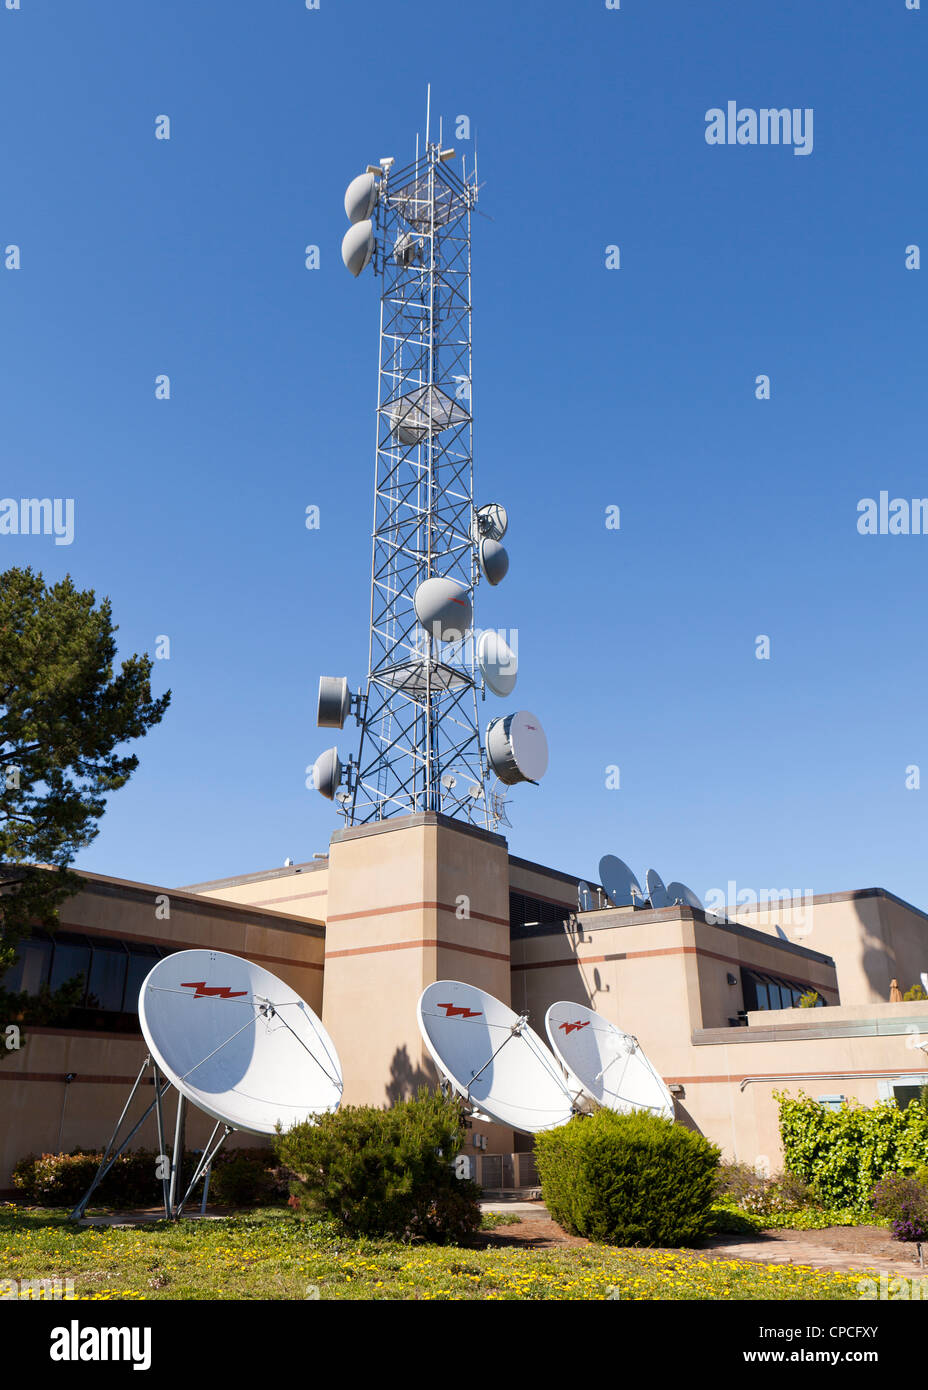 Stazione TV antenne paraboliche per la ricezione satellitare Foto Stock